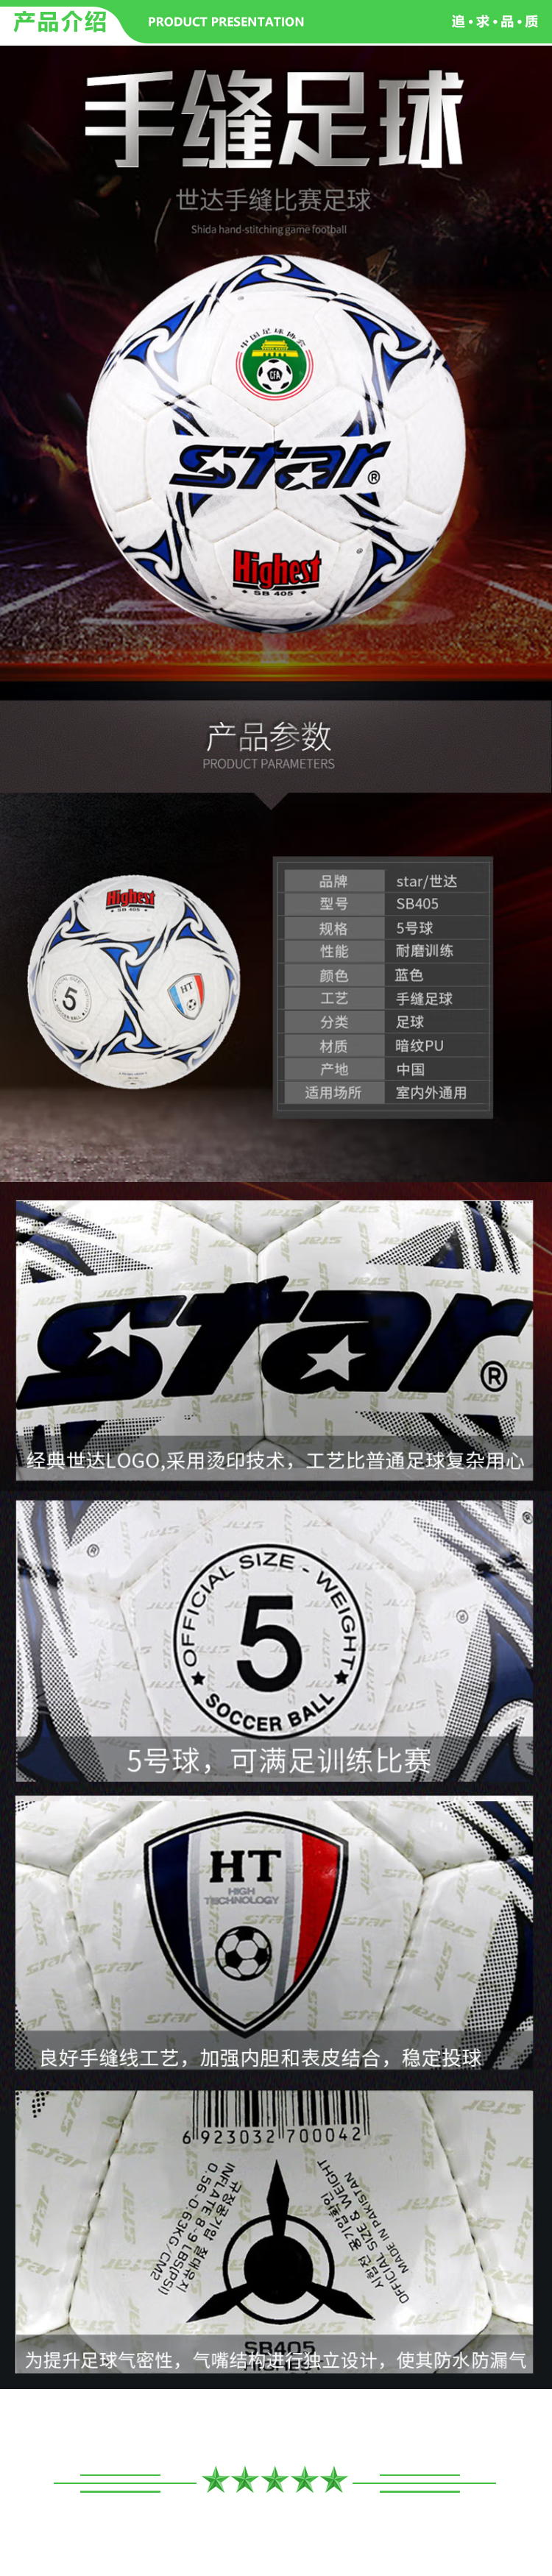 世达 star SB405 耐磨 PU 手缝 5号 比赛用 足球   2.jpg